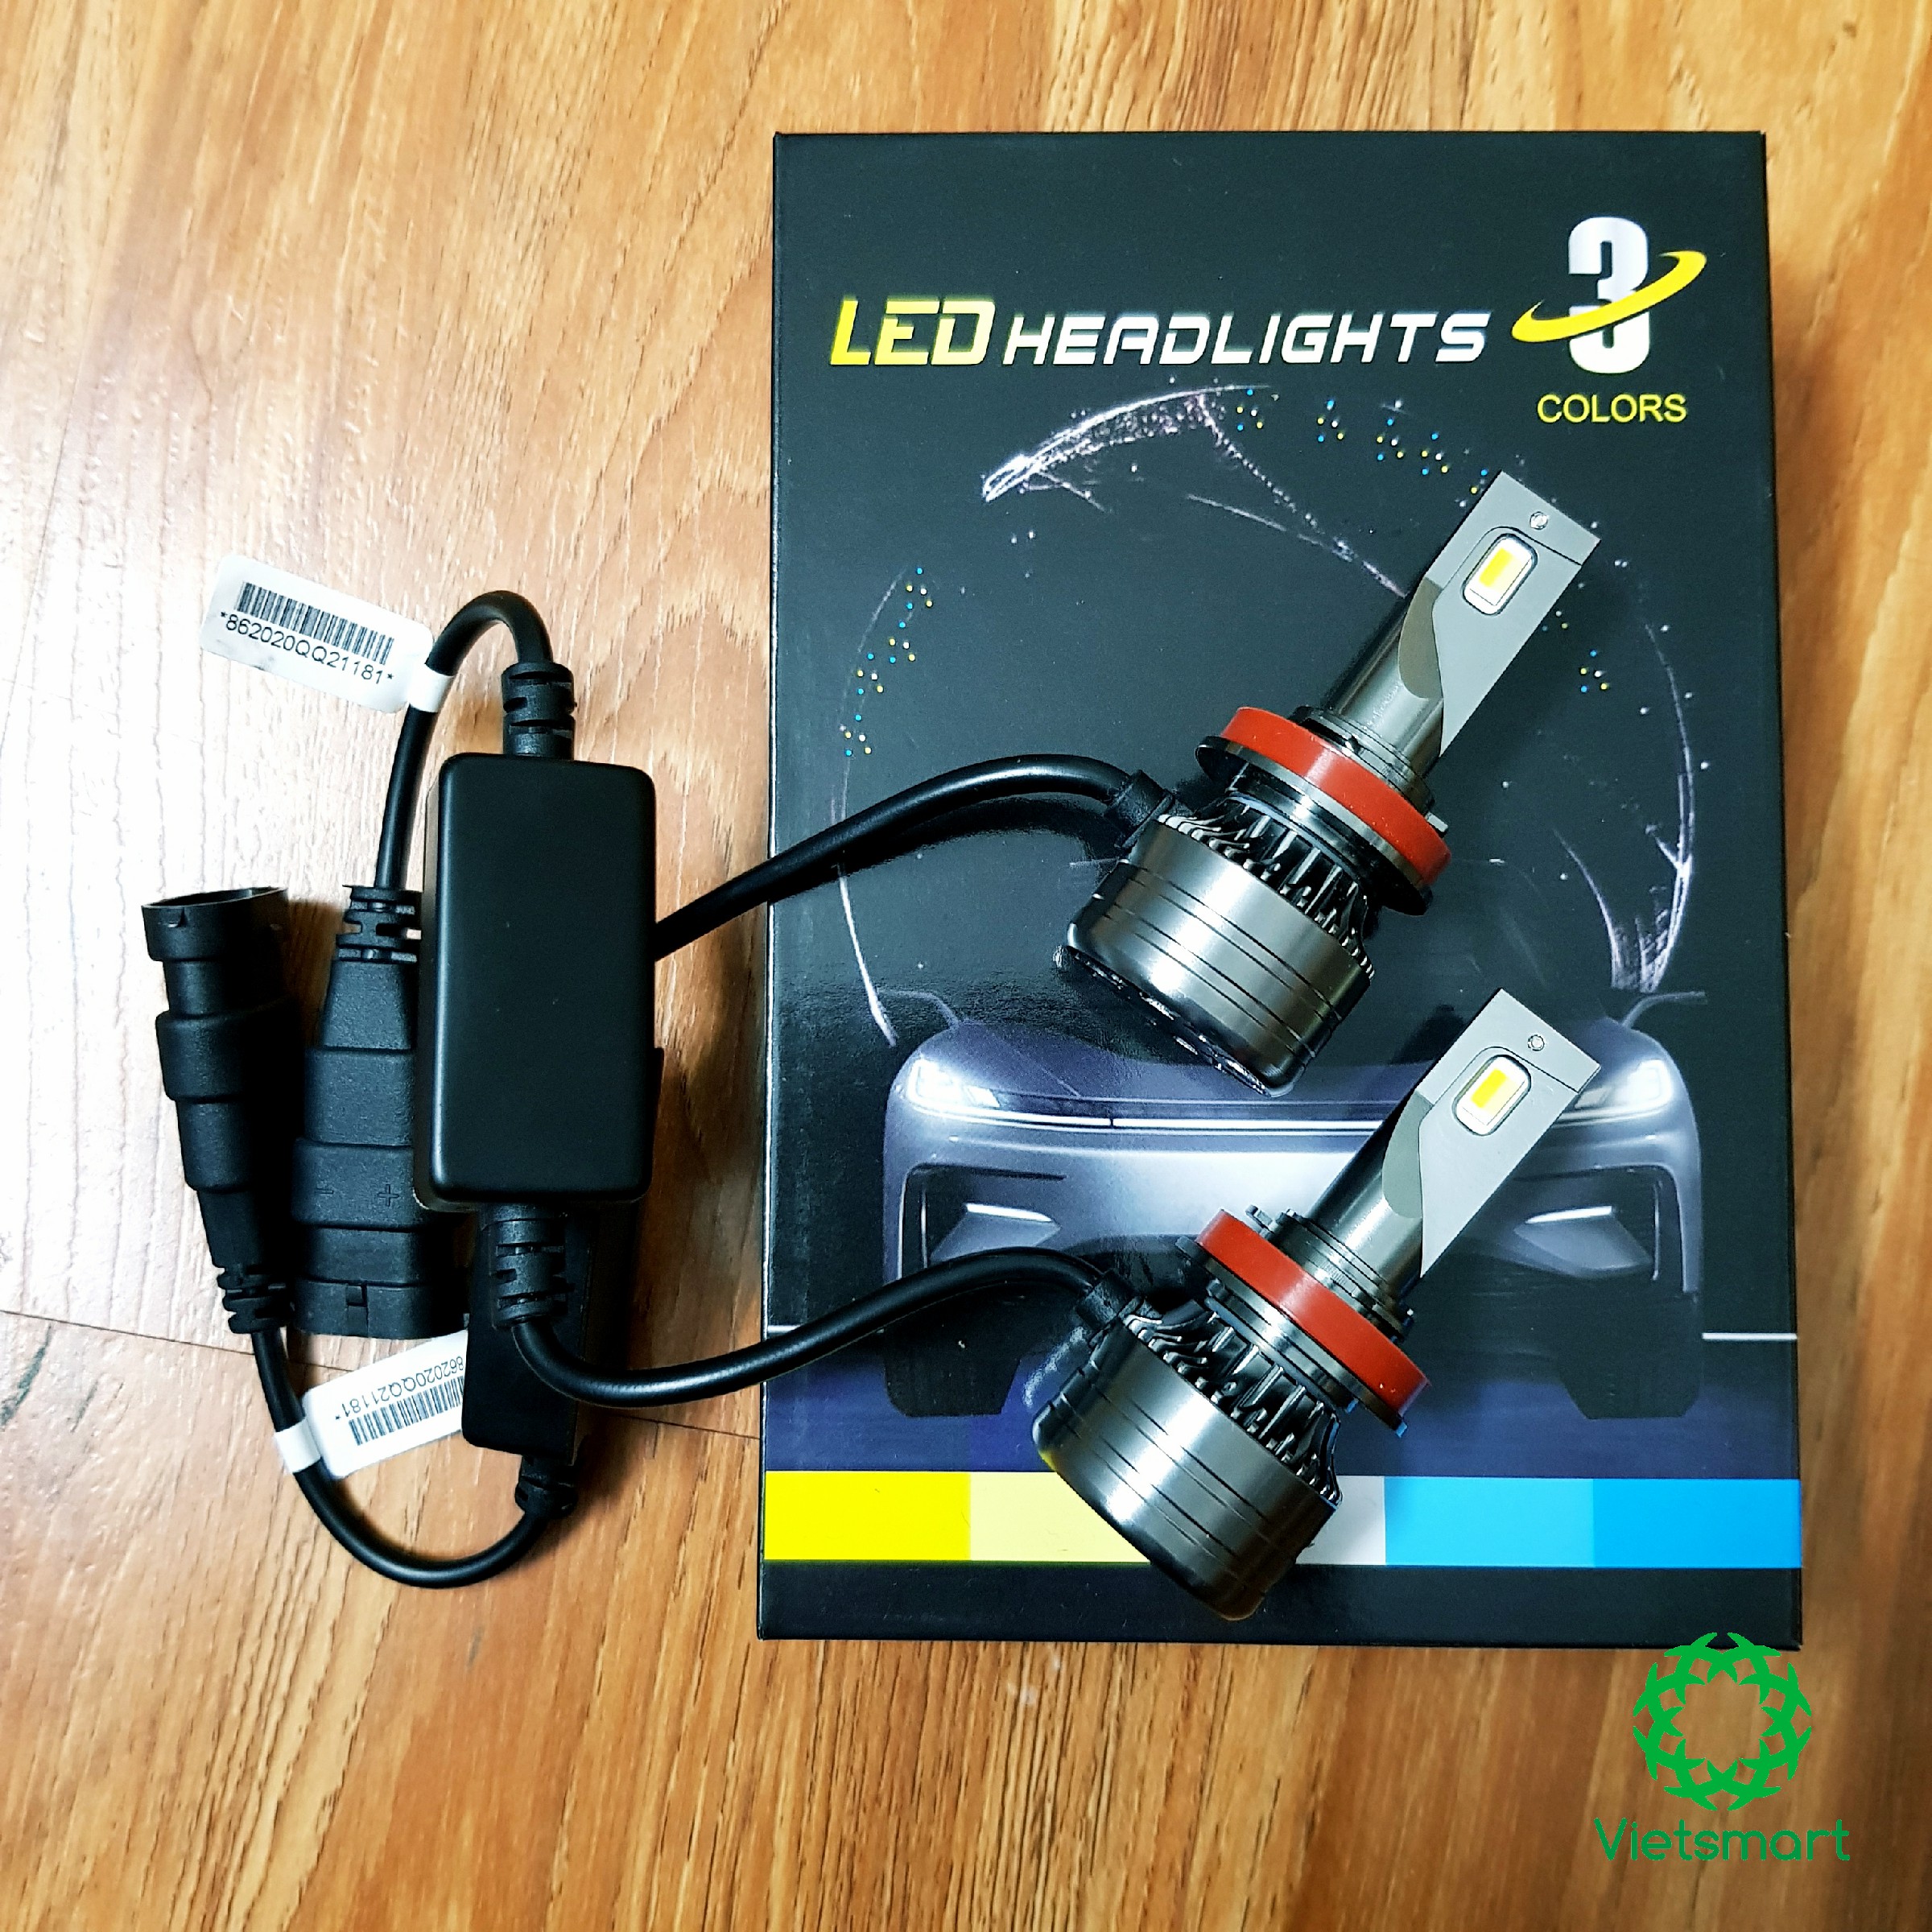 Đèn LED gầm Unilight XM70 3 chế độ phá sương cho xe ô tô chân H4/H8/H9/H11/H16-9005/HB3/H10-9006/HB4/H7 (GIÁ 1 CHIẾC)